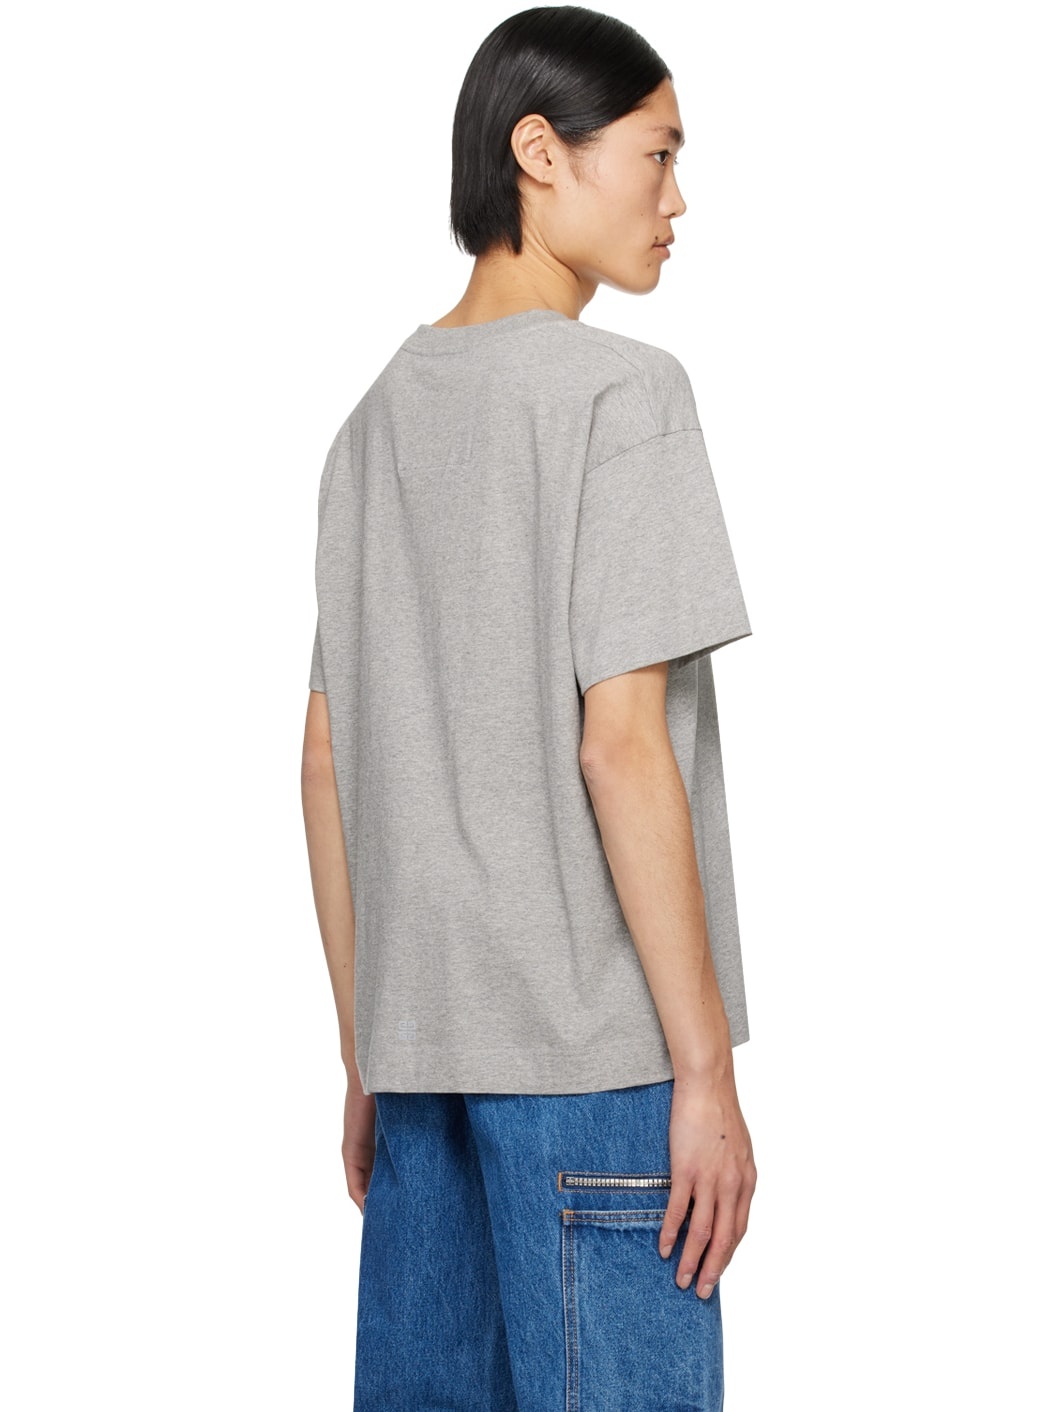 Gray Boxy T-Shirt - 3